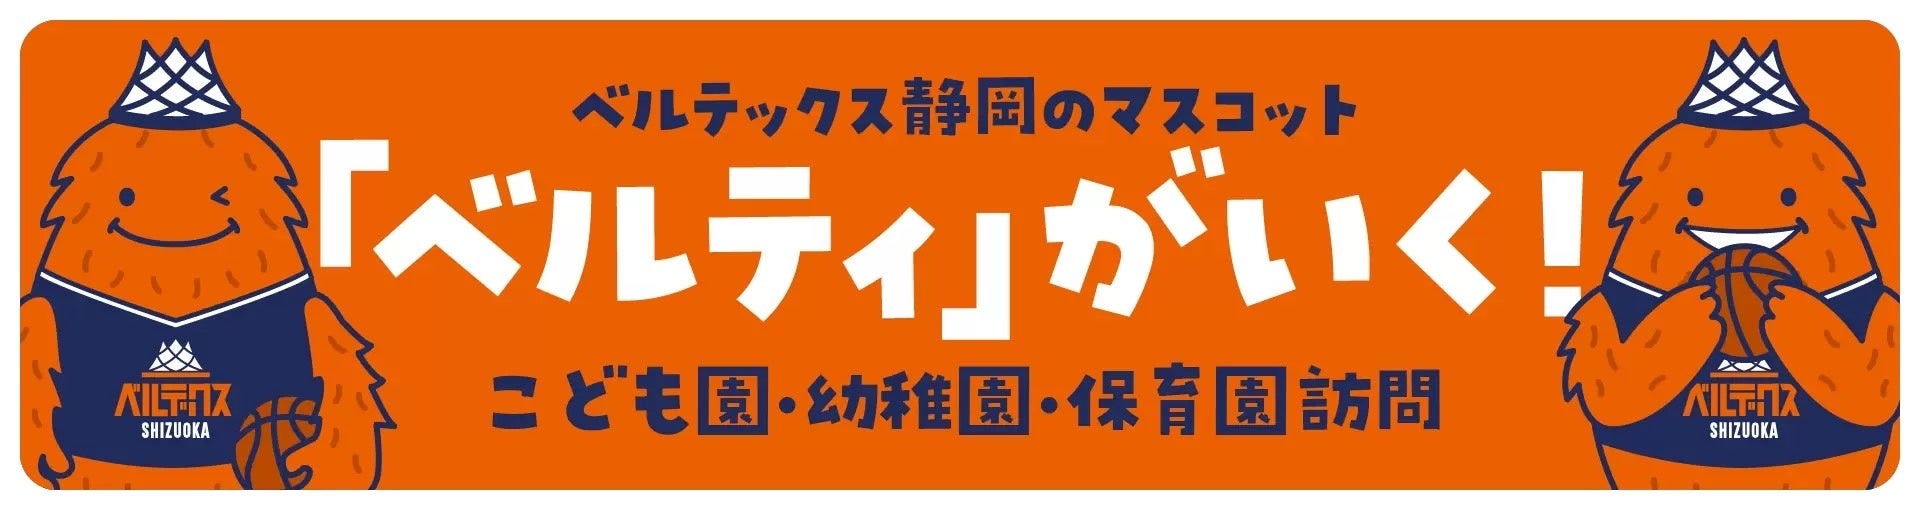 24時間年中無休の“ANYTIME FITNESS （エニタイムフィットネス）”を展開する 株式会社Fast Fitness Japanが 大分県姫島村と「健康増進に関する協定」を締結